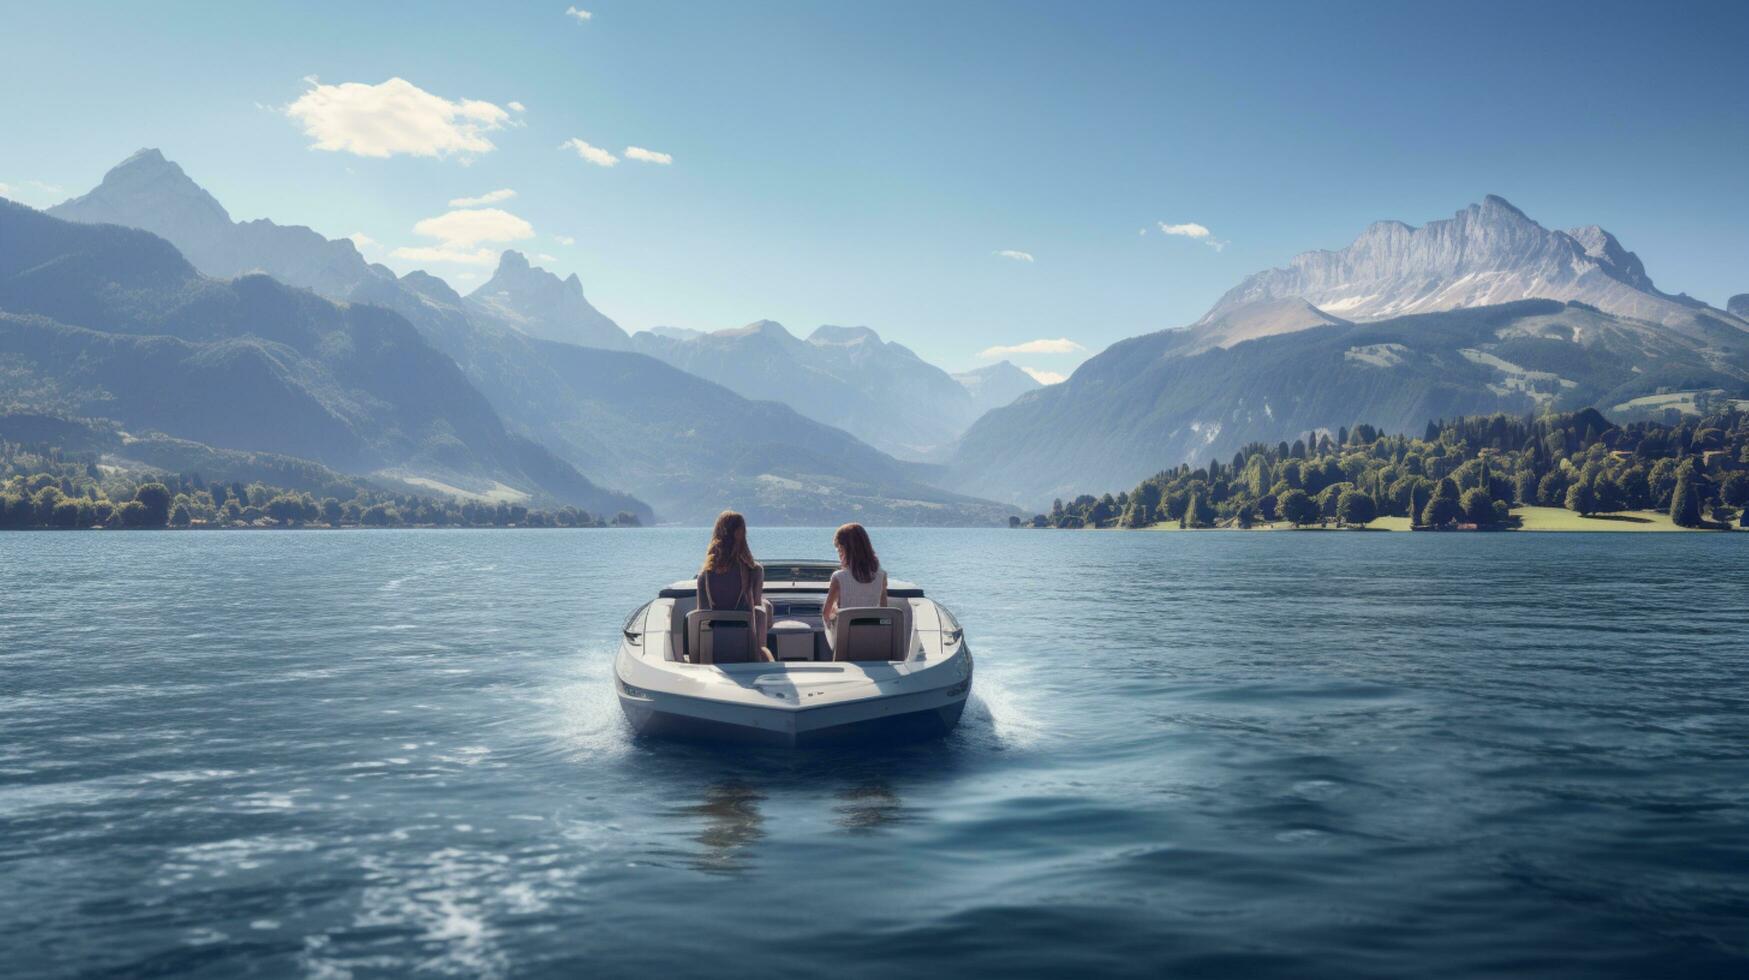 genial lago ver montaña con personas en el barco foto